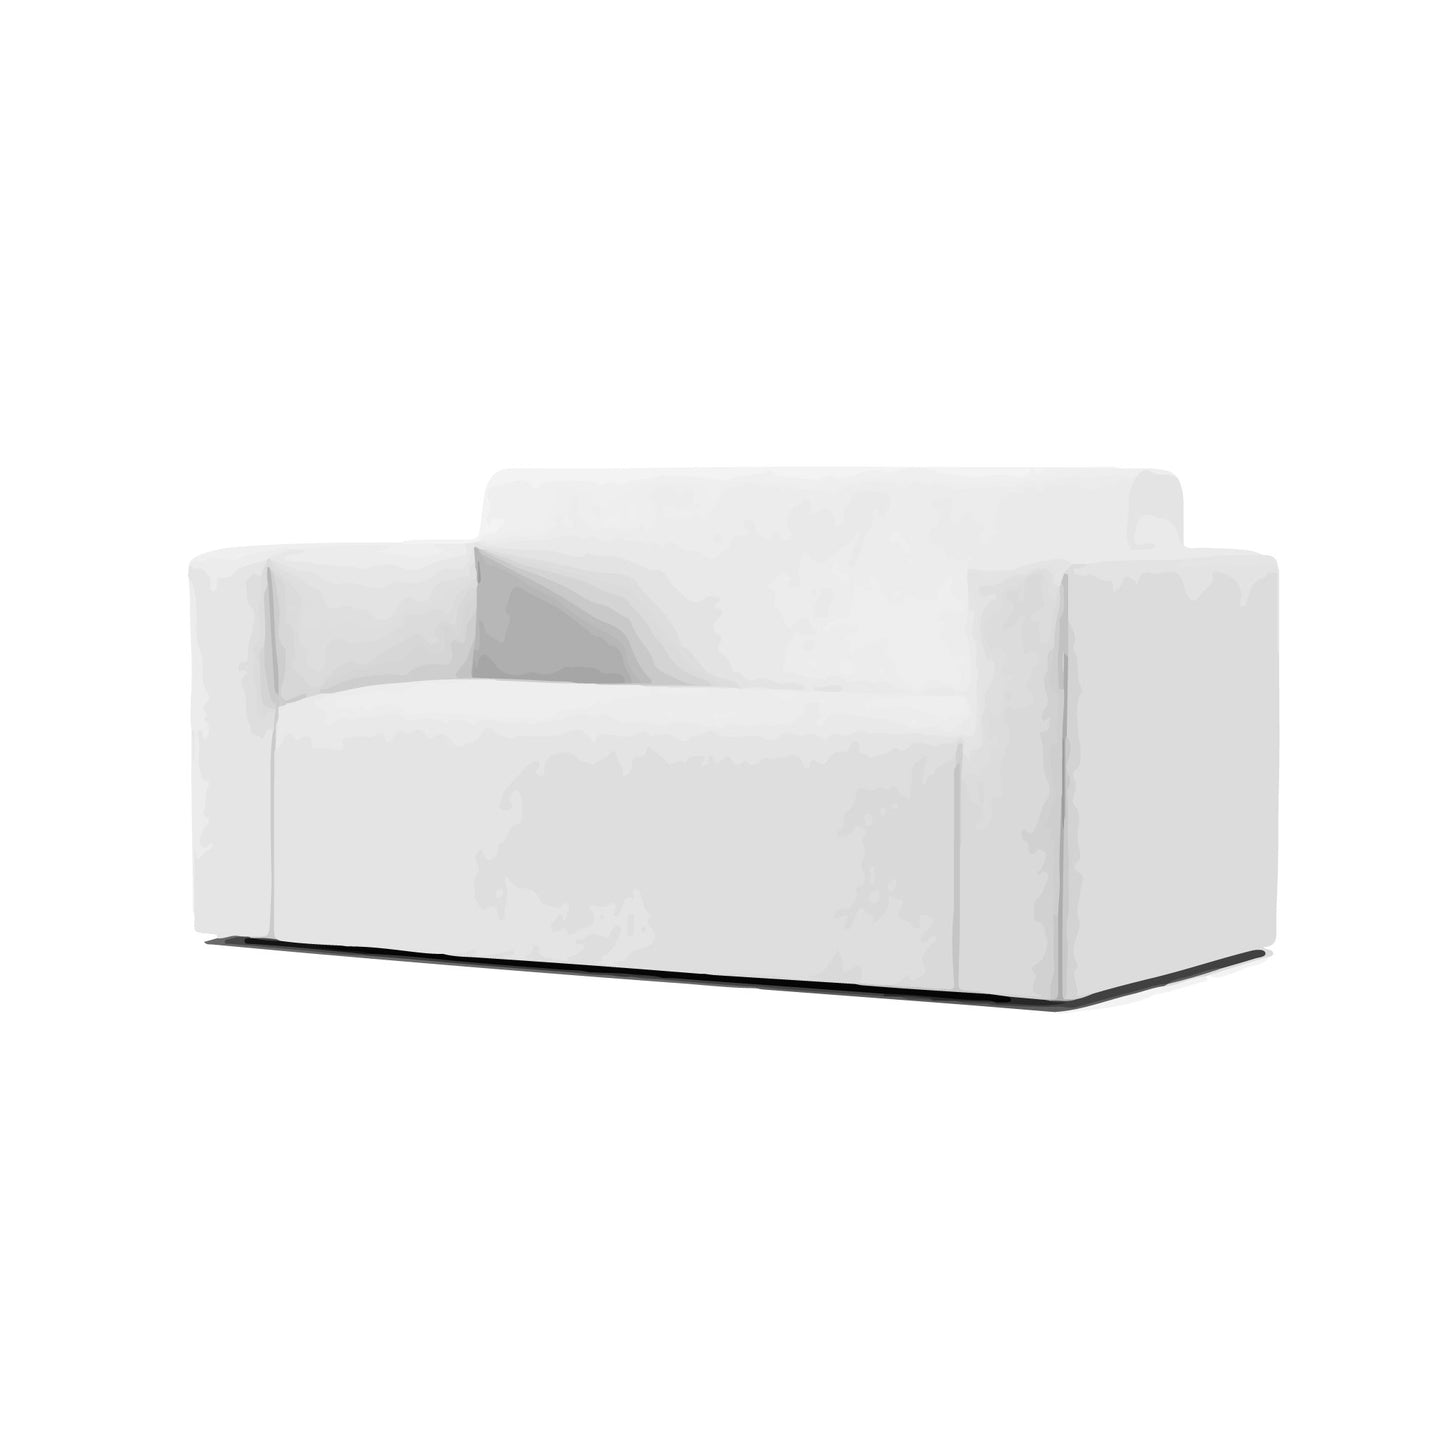 Klobo 2 Seater Sofa Cover